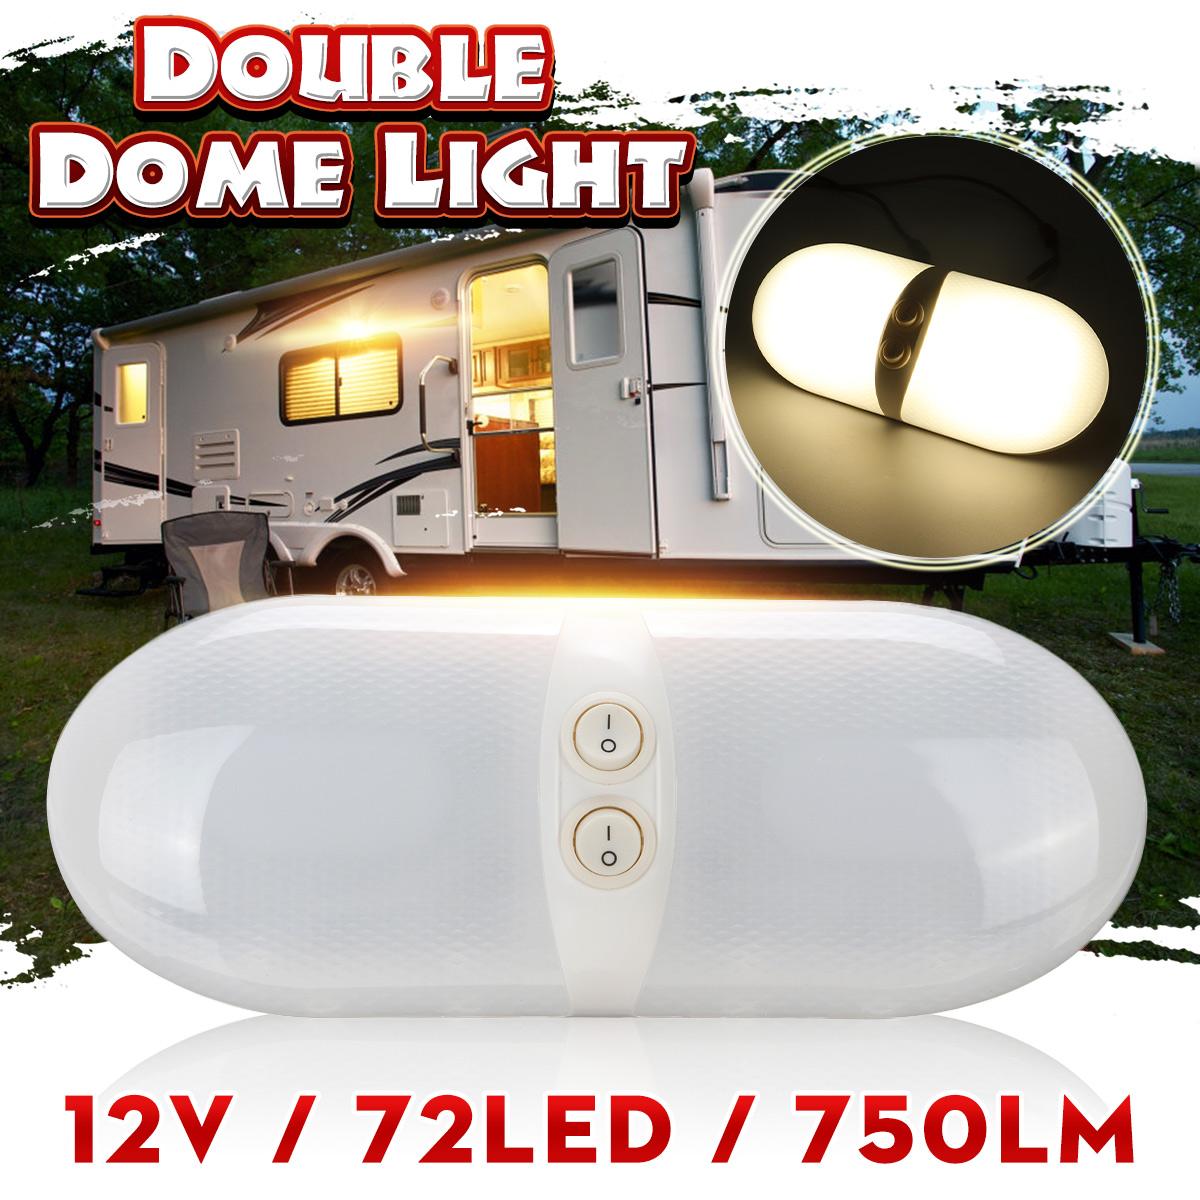 12 V 72LED RV Plafond Lichtkoepel met Schakelaar Dubbele Dome Interieur Vervanging Verlichting voor RV Trailer Camper Camper Boot